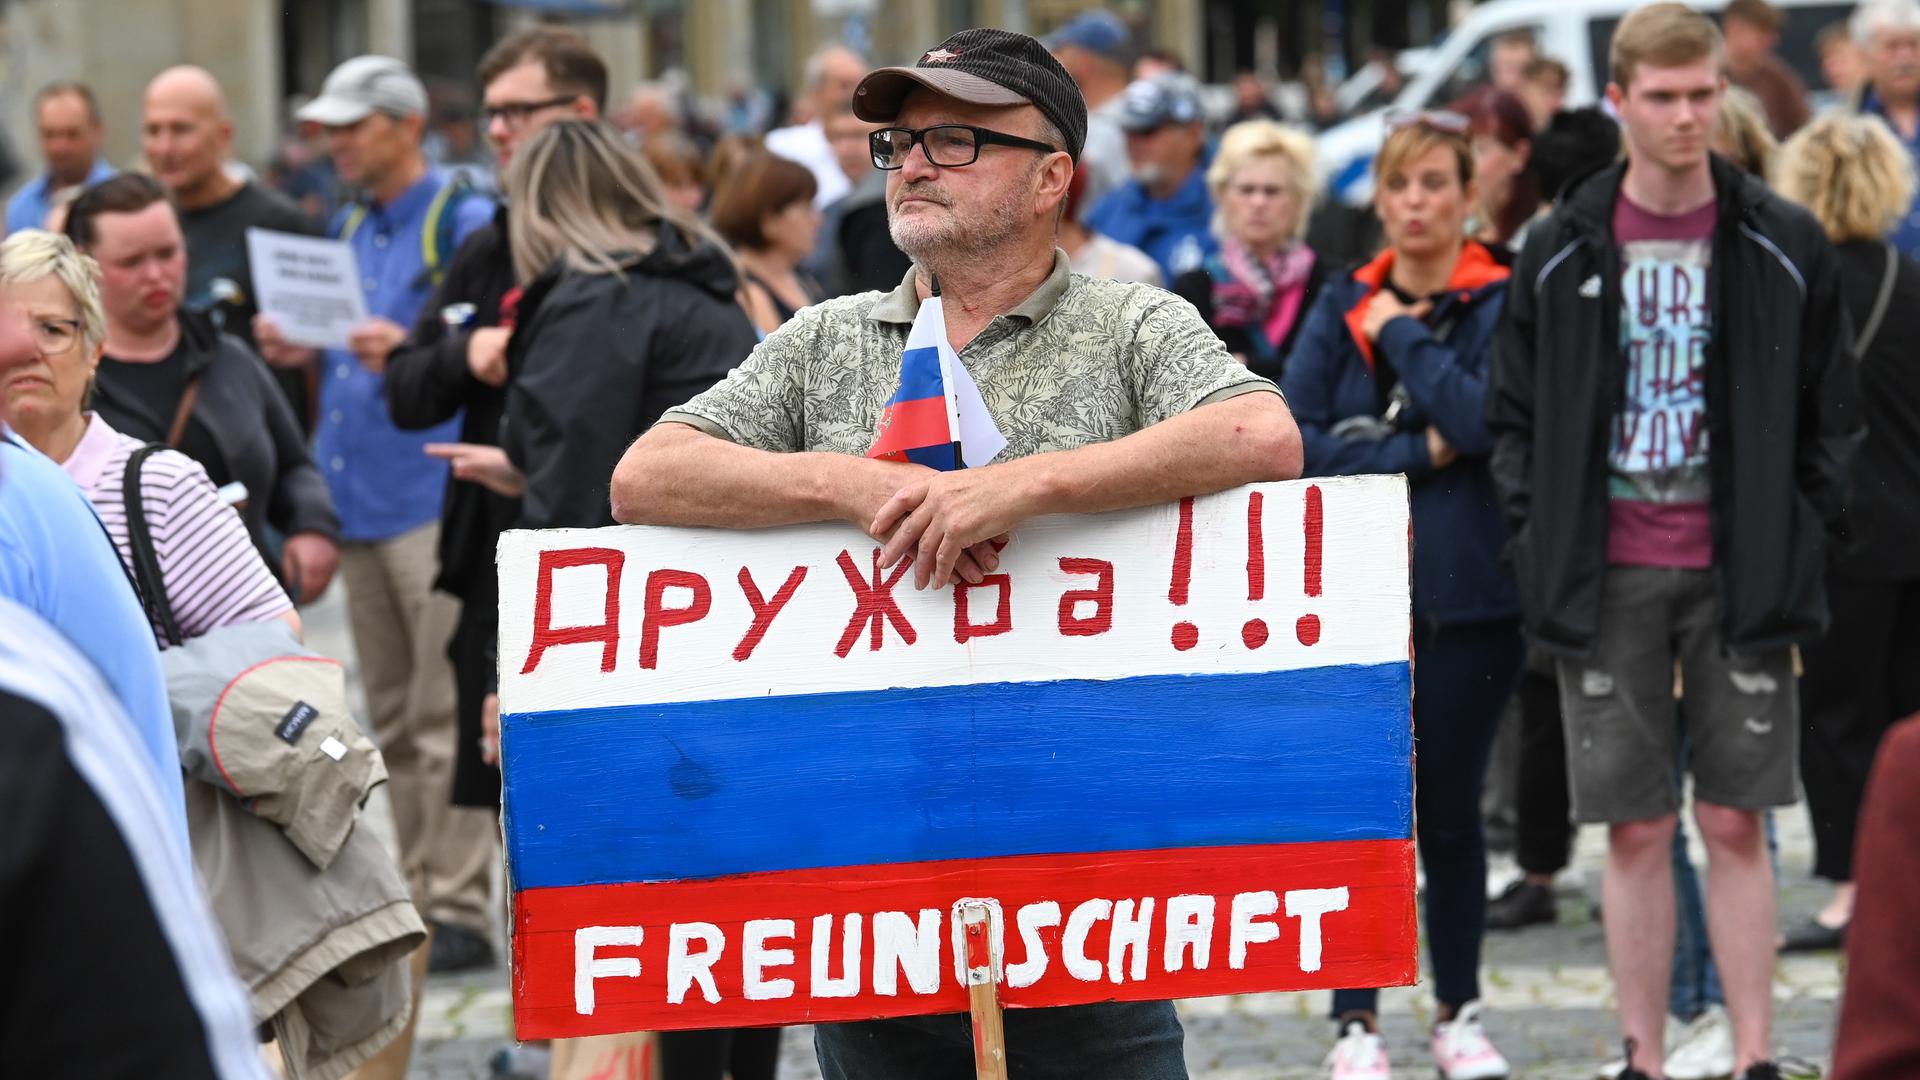 Ein Teilnehmer der AfD-Kundgebung hält ein Schild in den Farben von Russland mit der deutsch-russischen Aufschrift "Druschba!!! - Freundschaft".